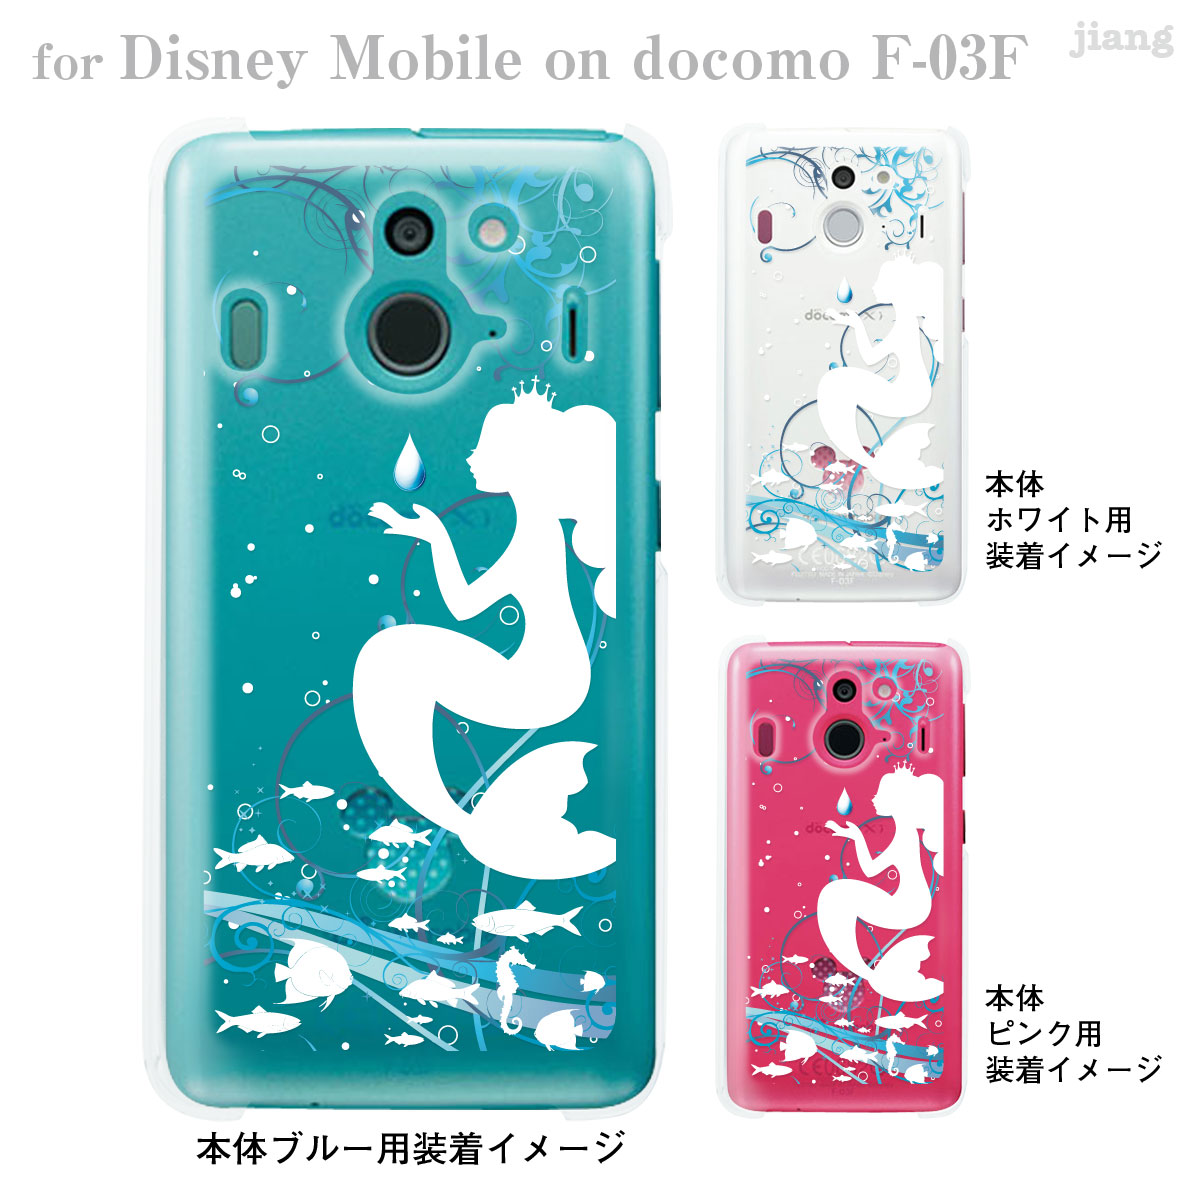 楽天市場 Disney Mobile On Docomo F 03f F03f ケース カバー スマホケース クリアケース ディズニー Clear Arts 人魚姫 08 F03f Ca0100a Jiangプラス